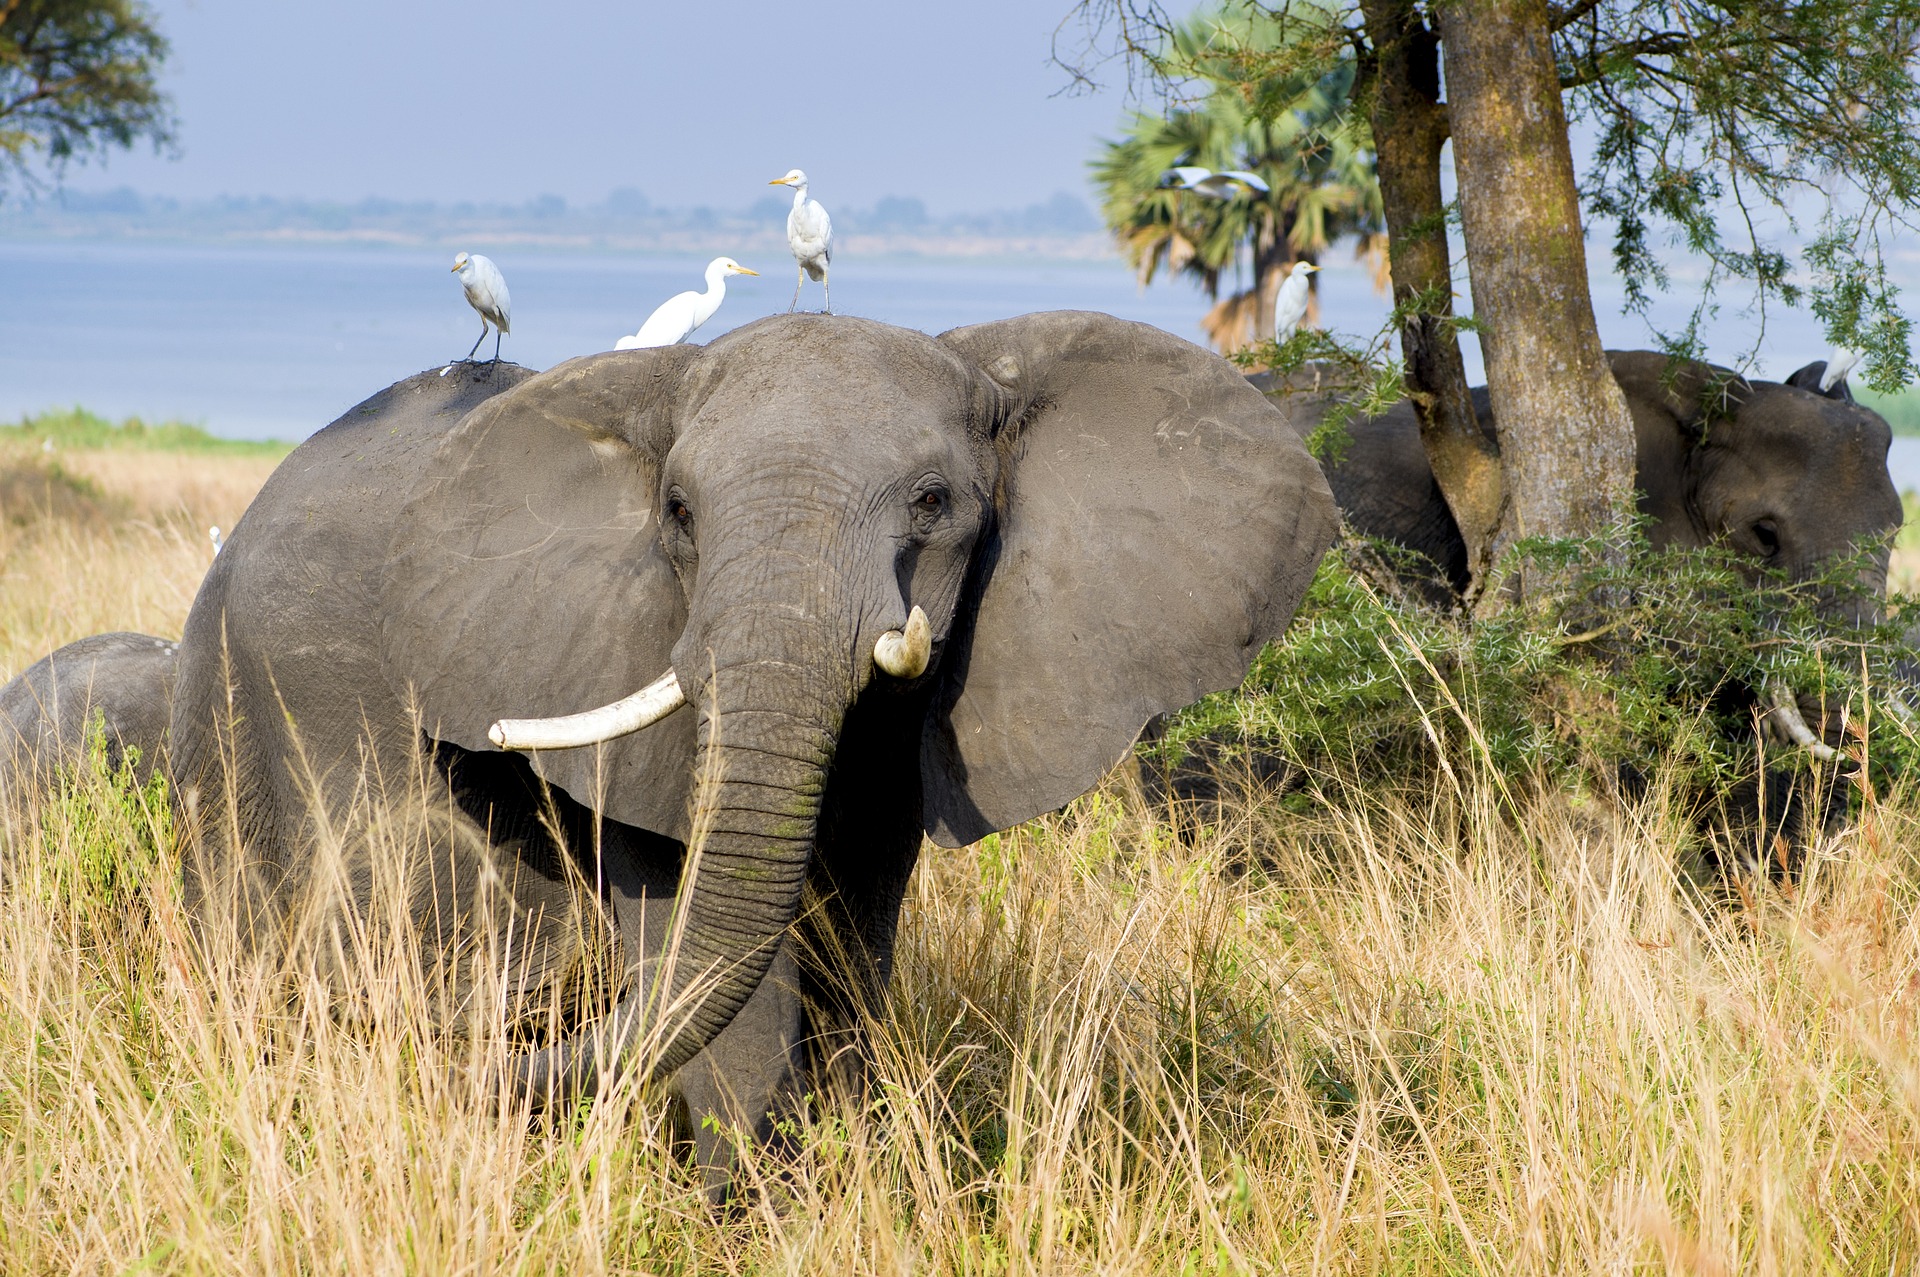 Uganda was gibt es schöneres als eine Safari in Afrika zu unternehemen